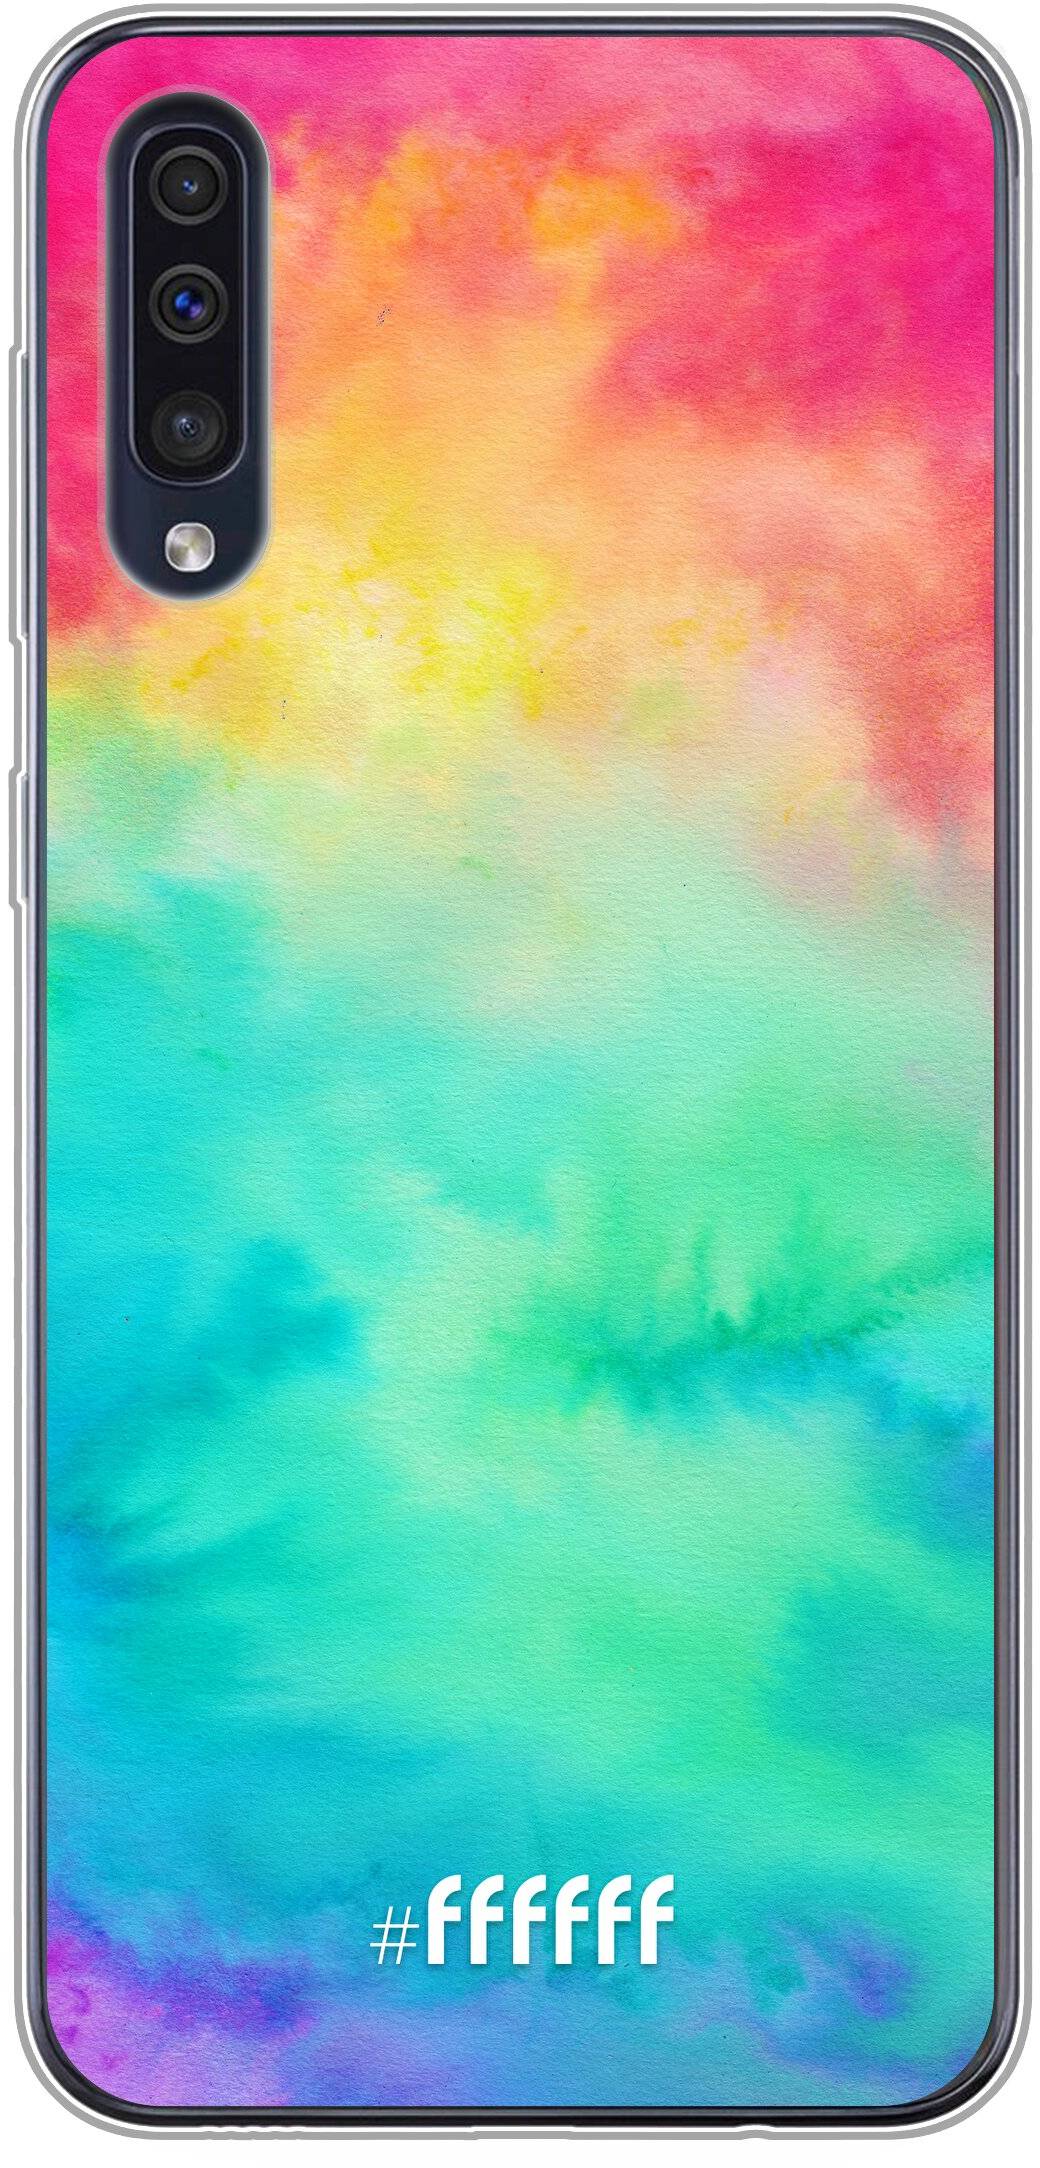 Rainbow Tie Dye Galaxy A50